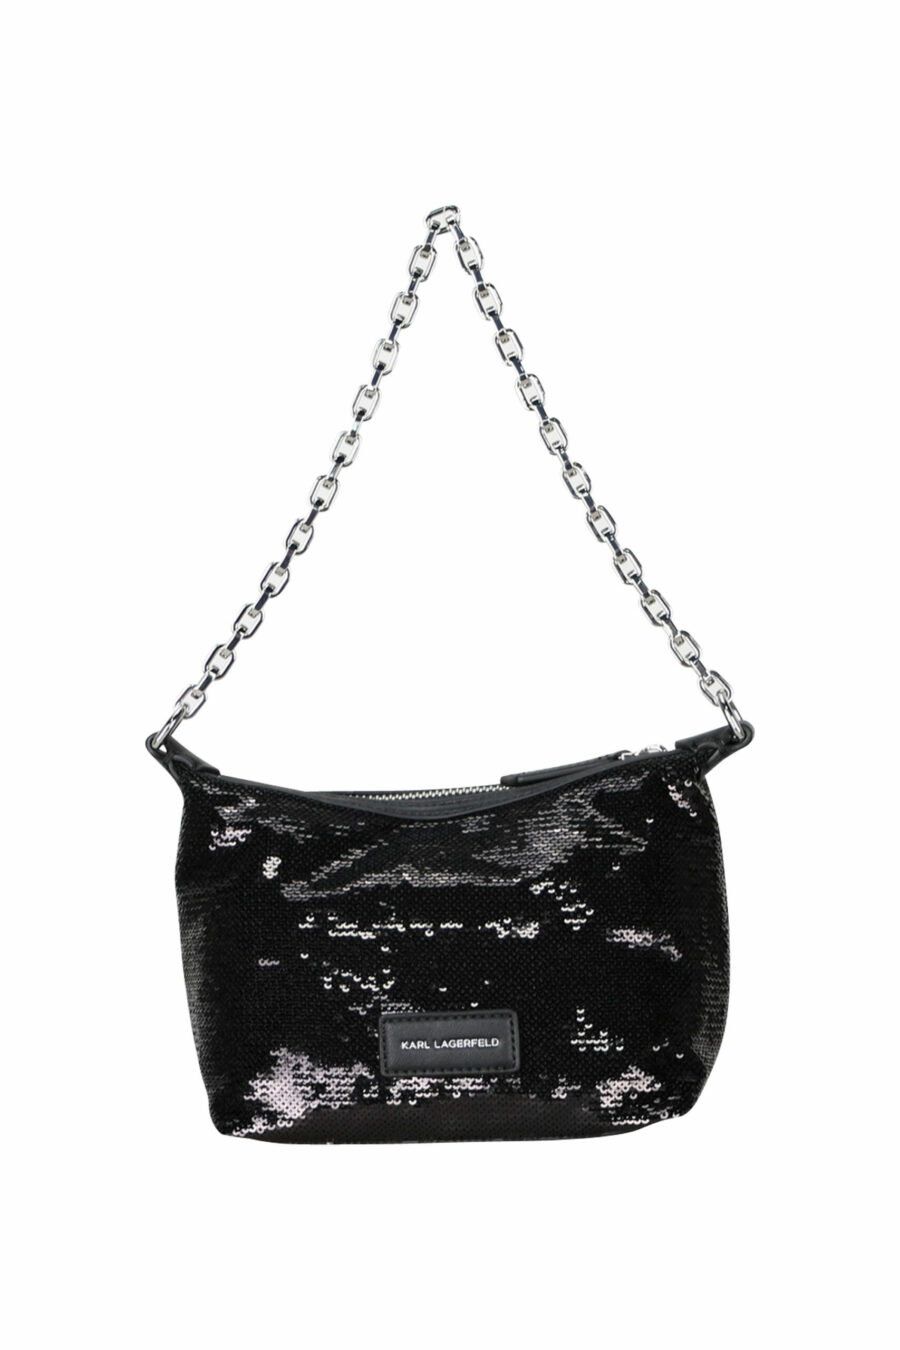 Black sequined shoulder bag with silver logo - 8720744416210 2 scaled